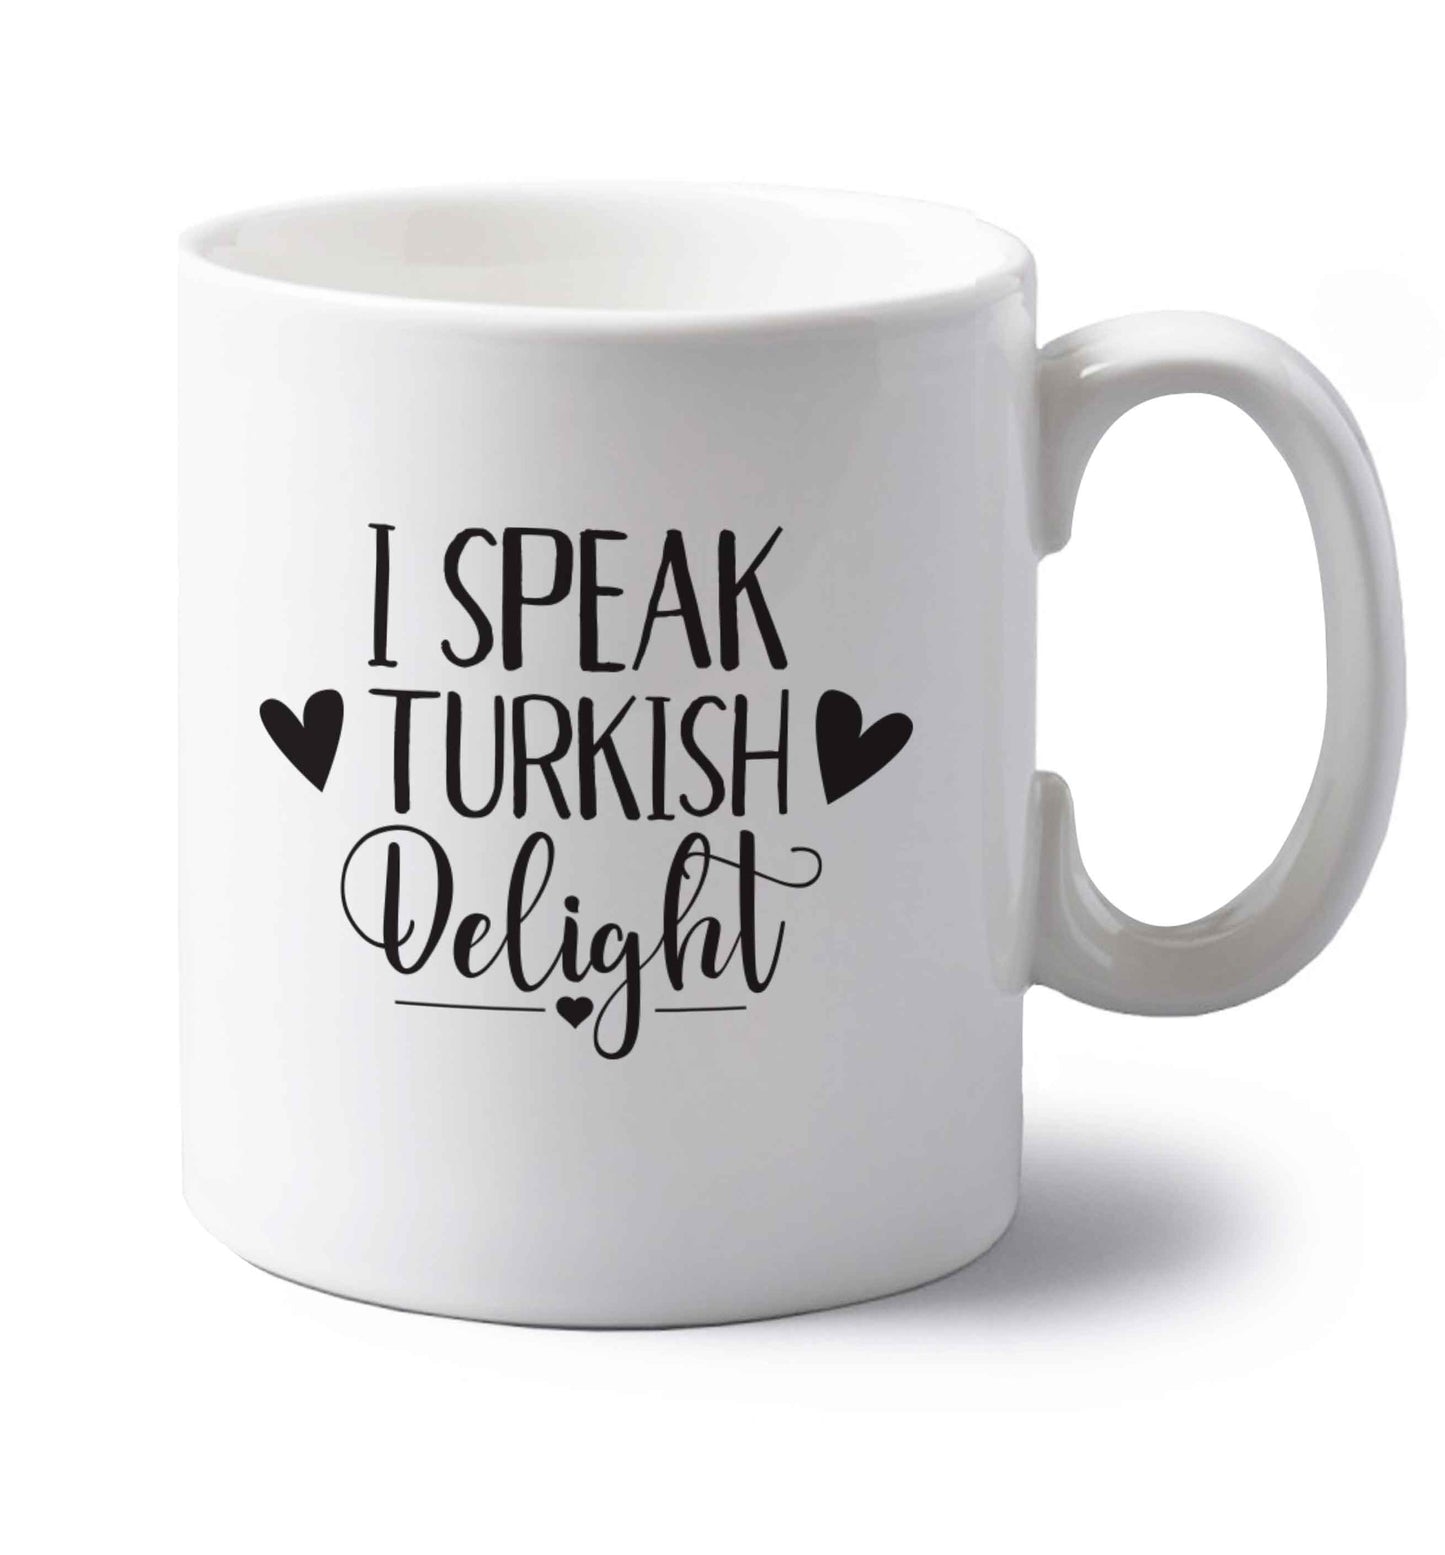 I speak turkish...delight left handed white ceramic mug 